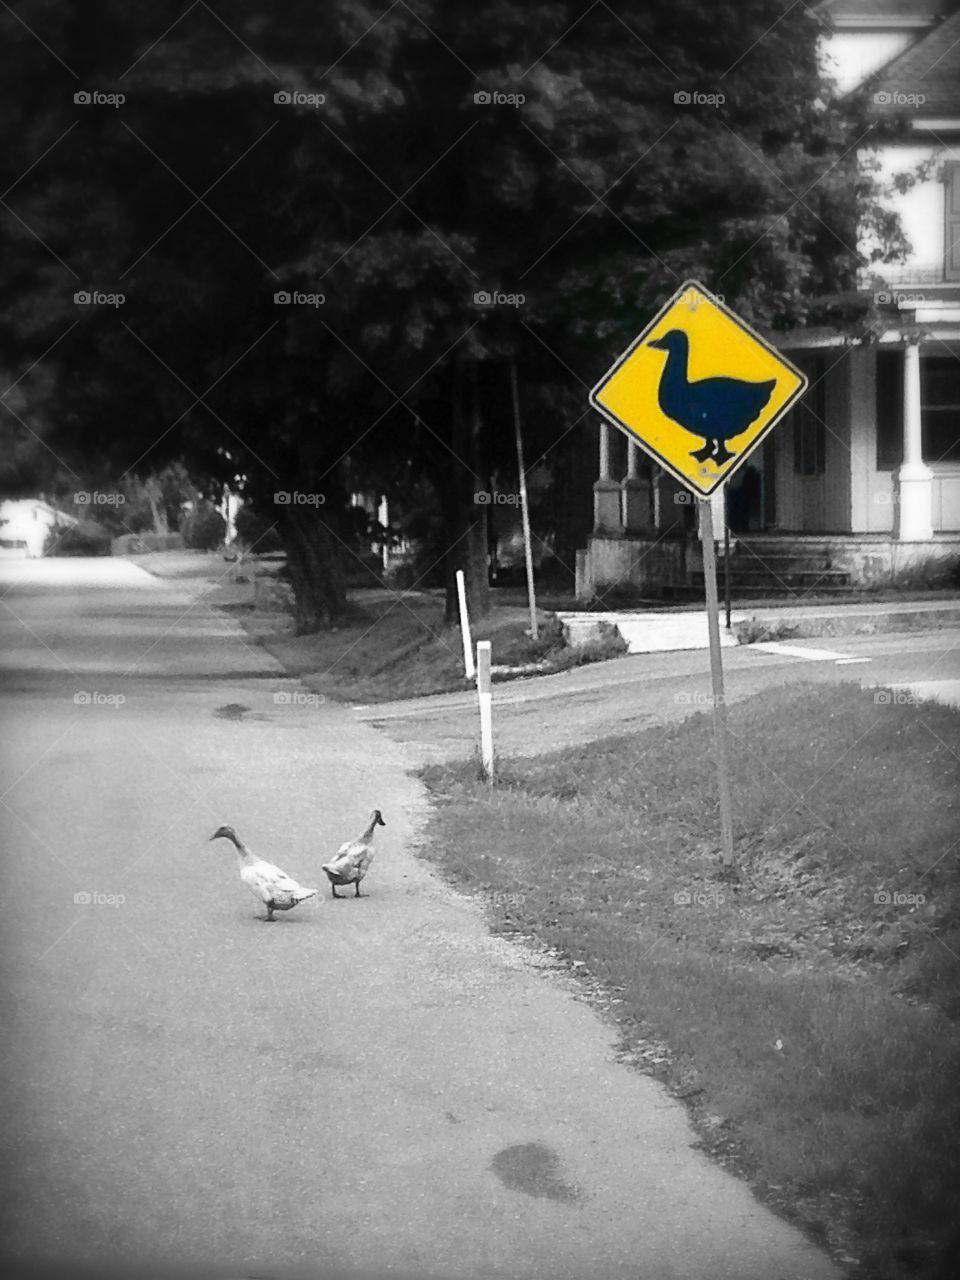 Quack crossing 💛